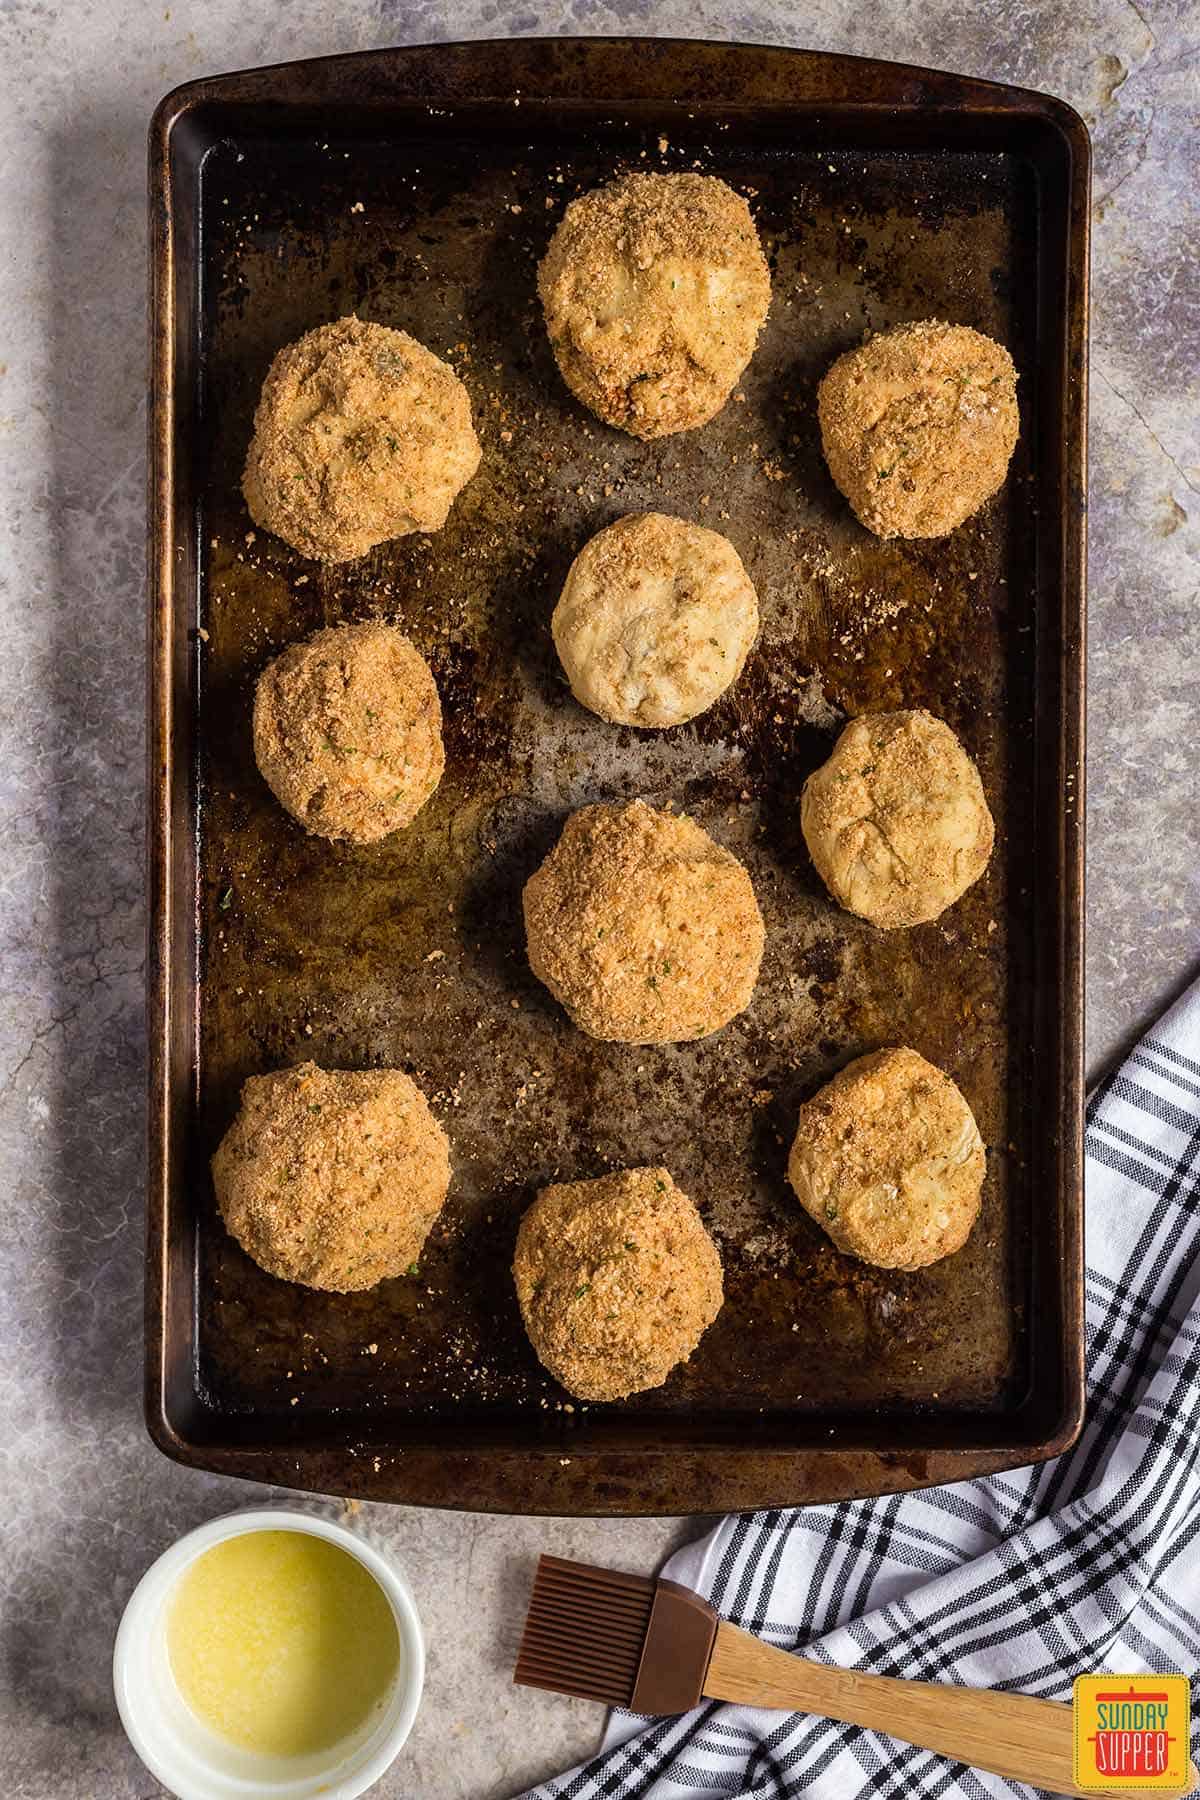 Stuffed potato balls on a baking sheet